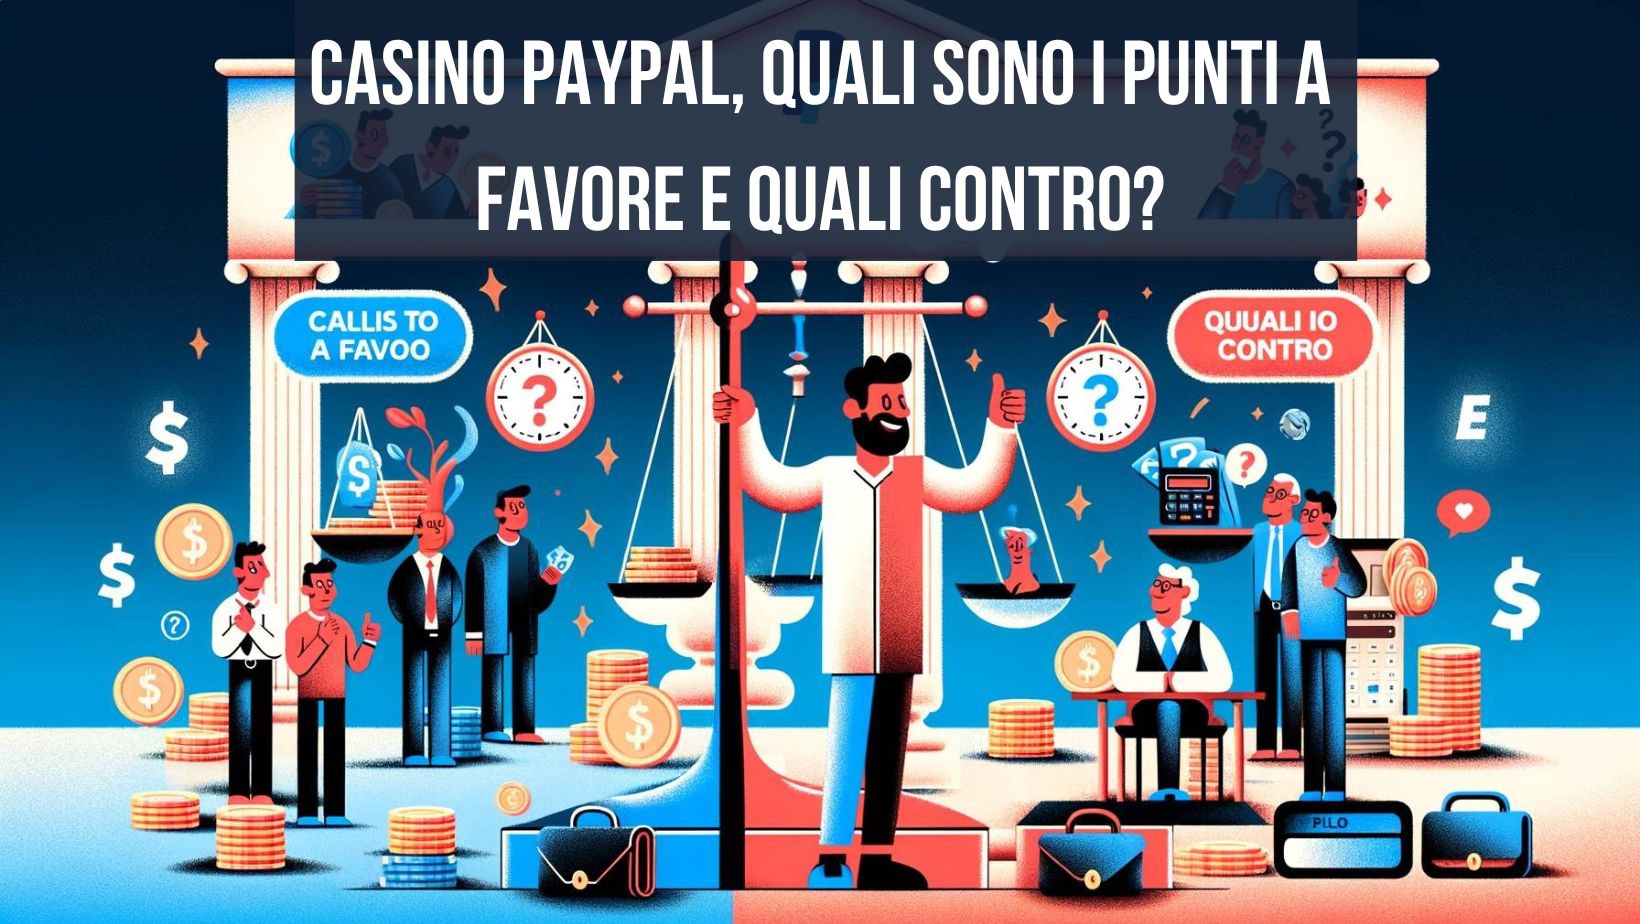 Casino PayPal, quali sono i punti a favore e quali contro?